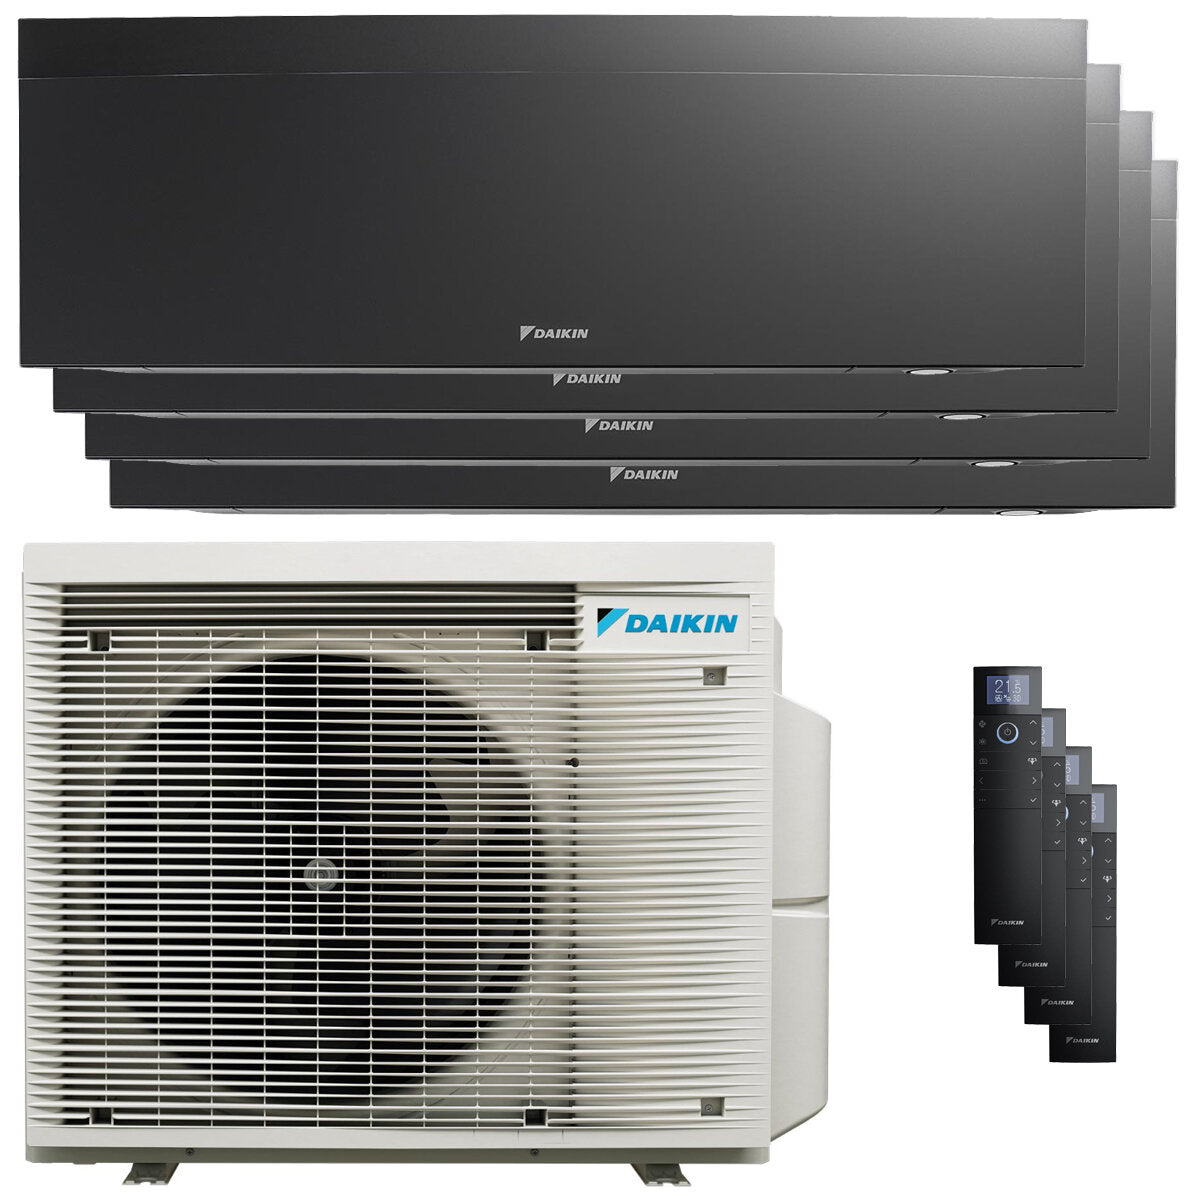 Daikin Emura air conditioner 3 split panels 9000+9000+9000+9000 BTU inverter A+ wifi outdoor unit 6.8 kW Black